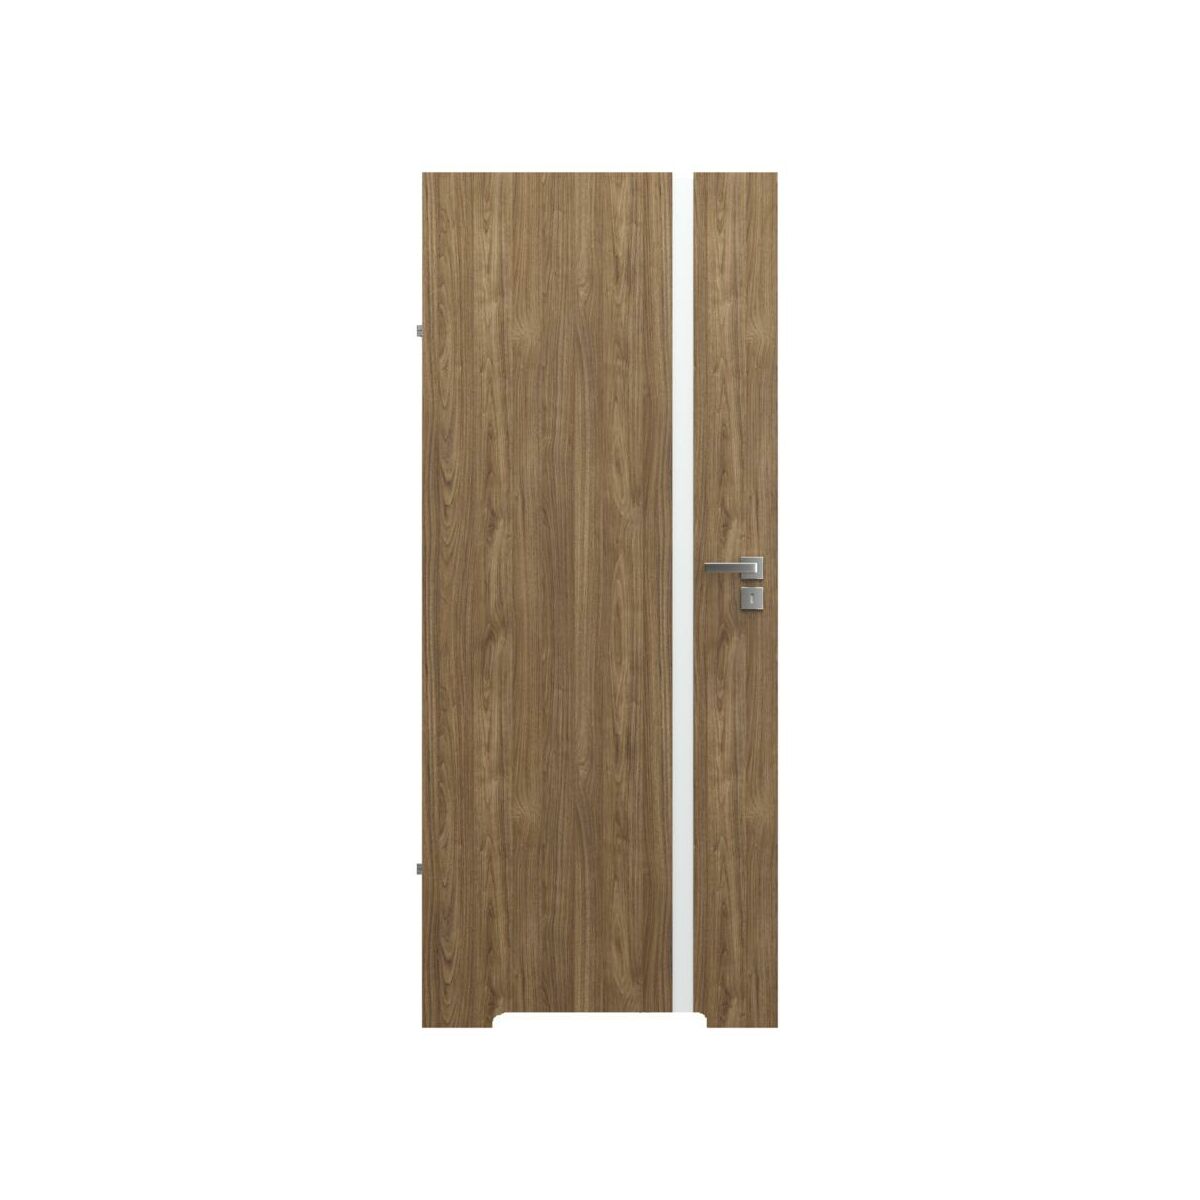 Drzwi wewnętrzne łazienkowe z podcięciem wentylacyjnym bezprzylgowe Focus 4A Orzech naturalny 70 Lewe Porta